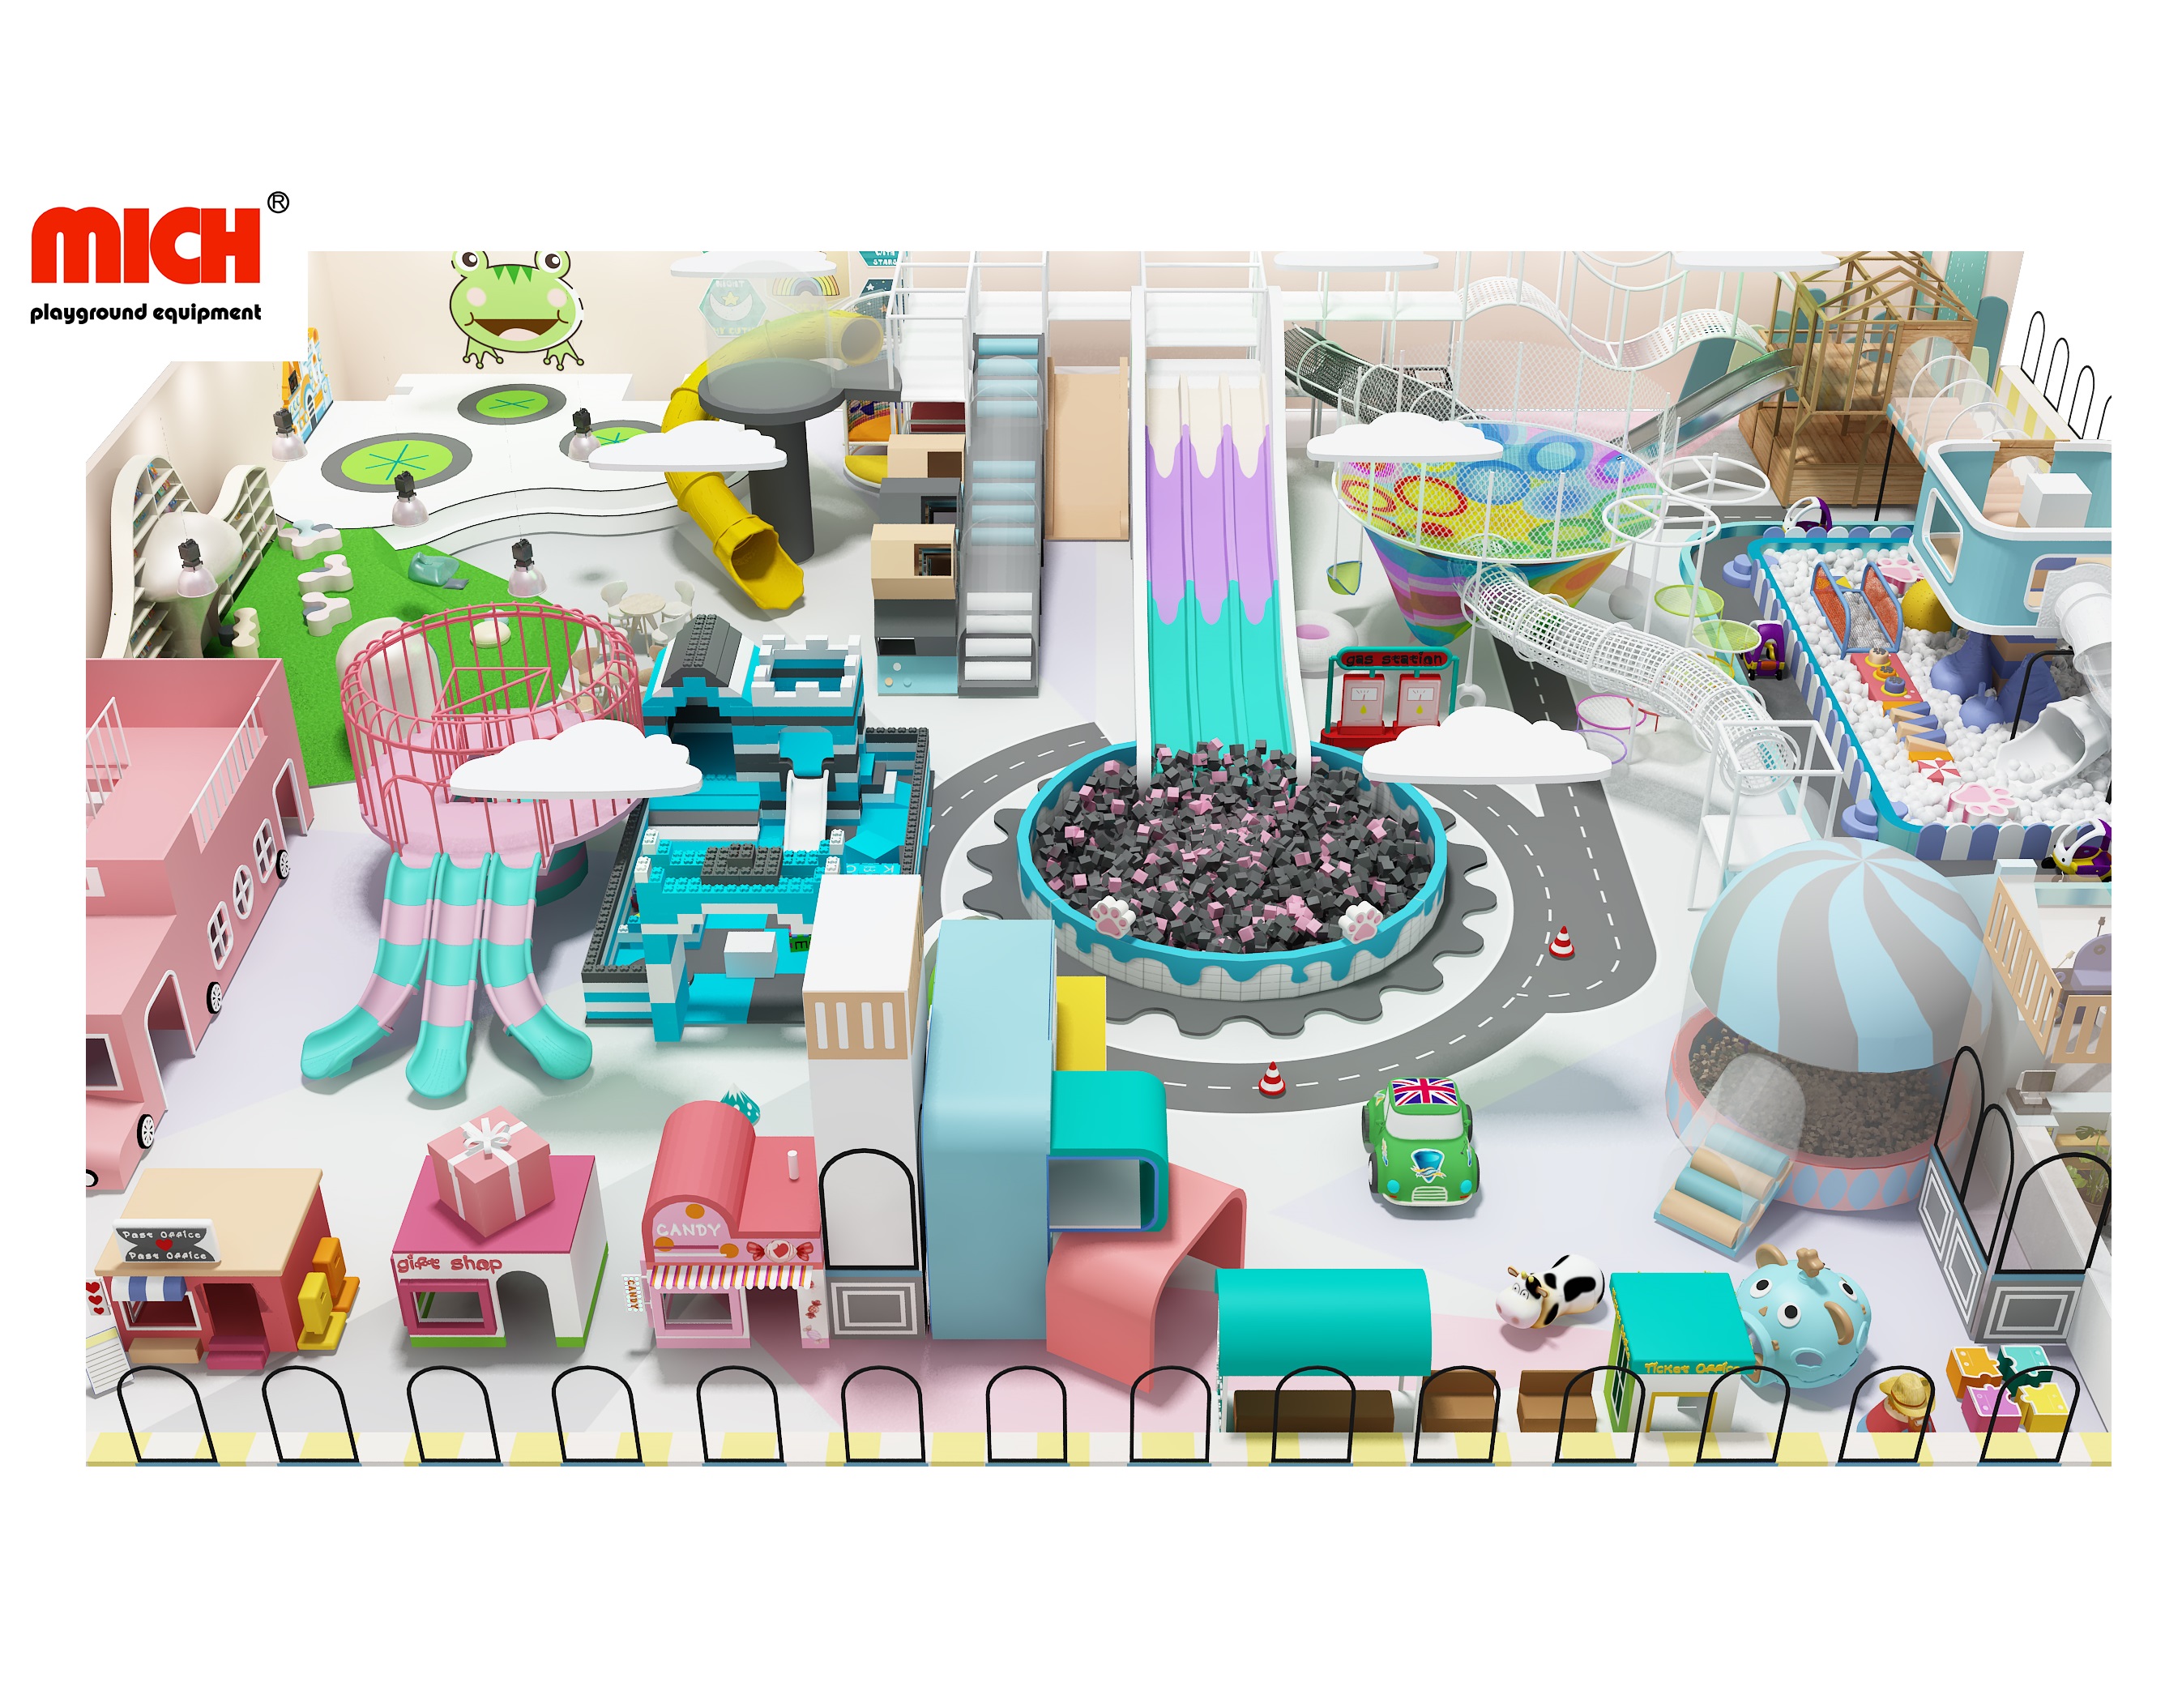 Candyland Toddler Indoor Soft Play Centre